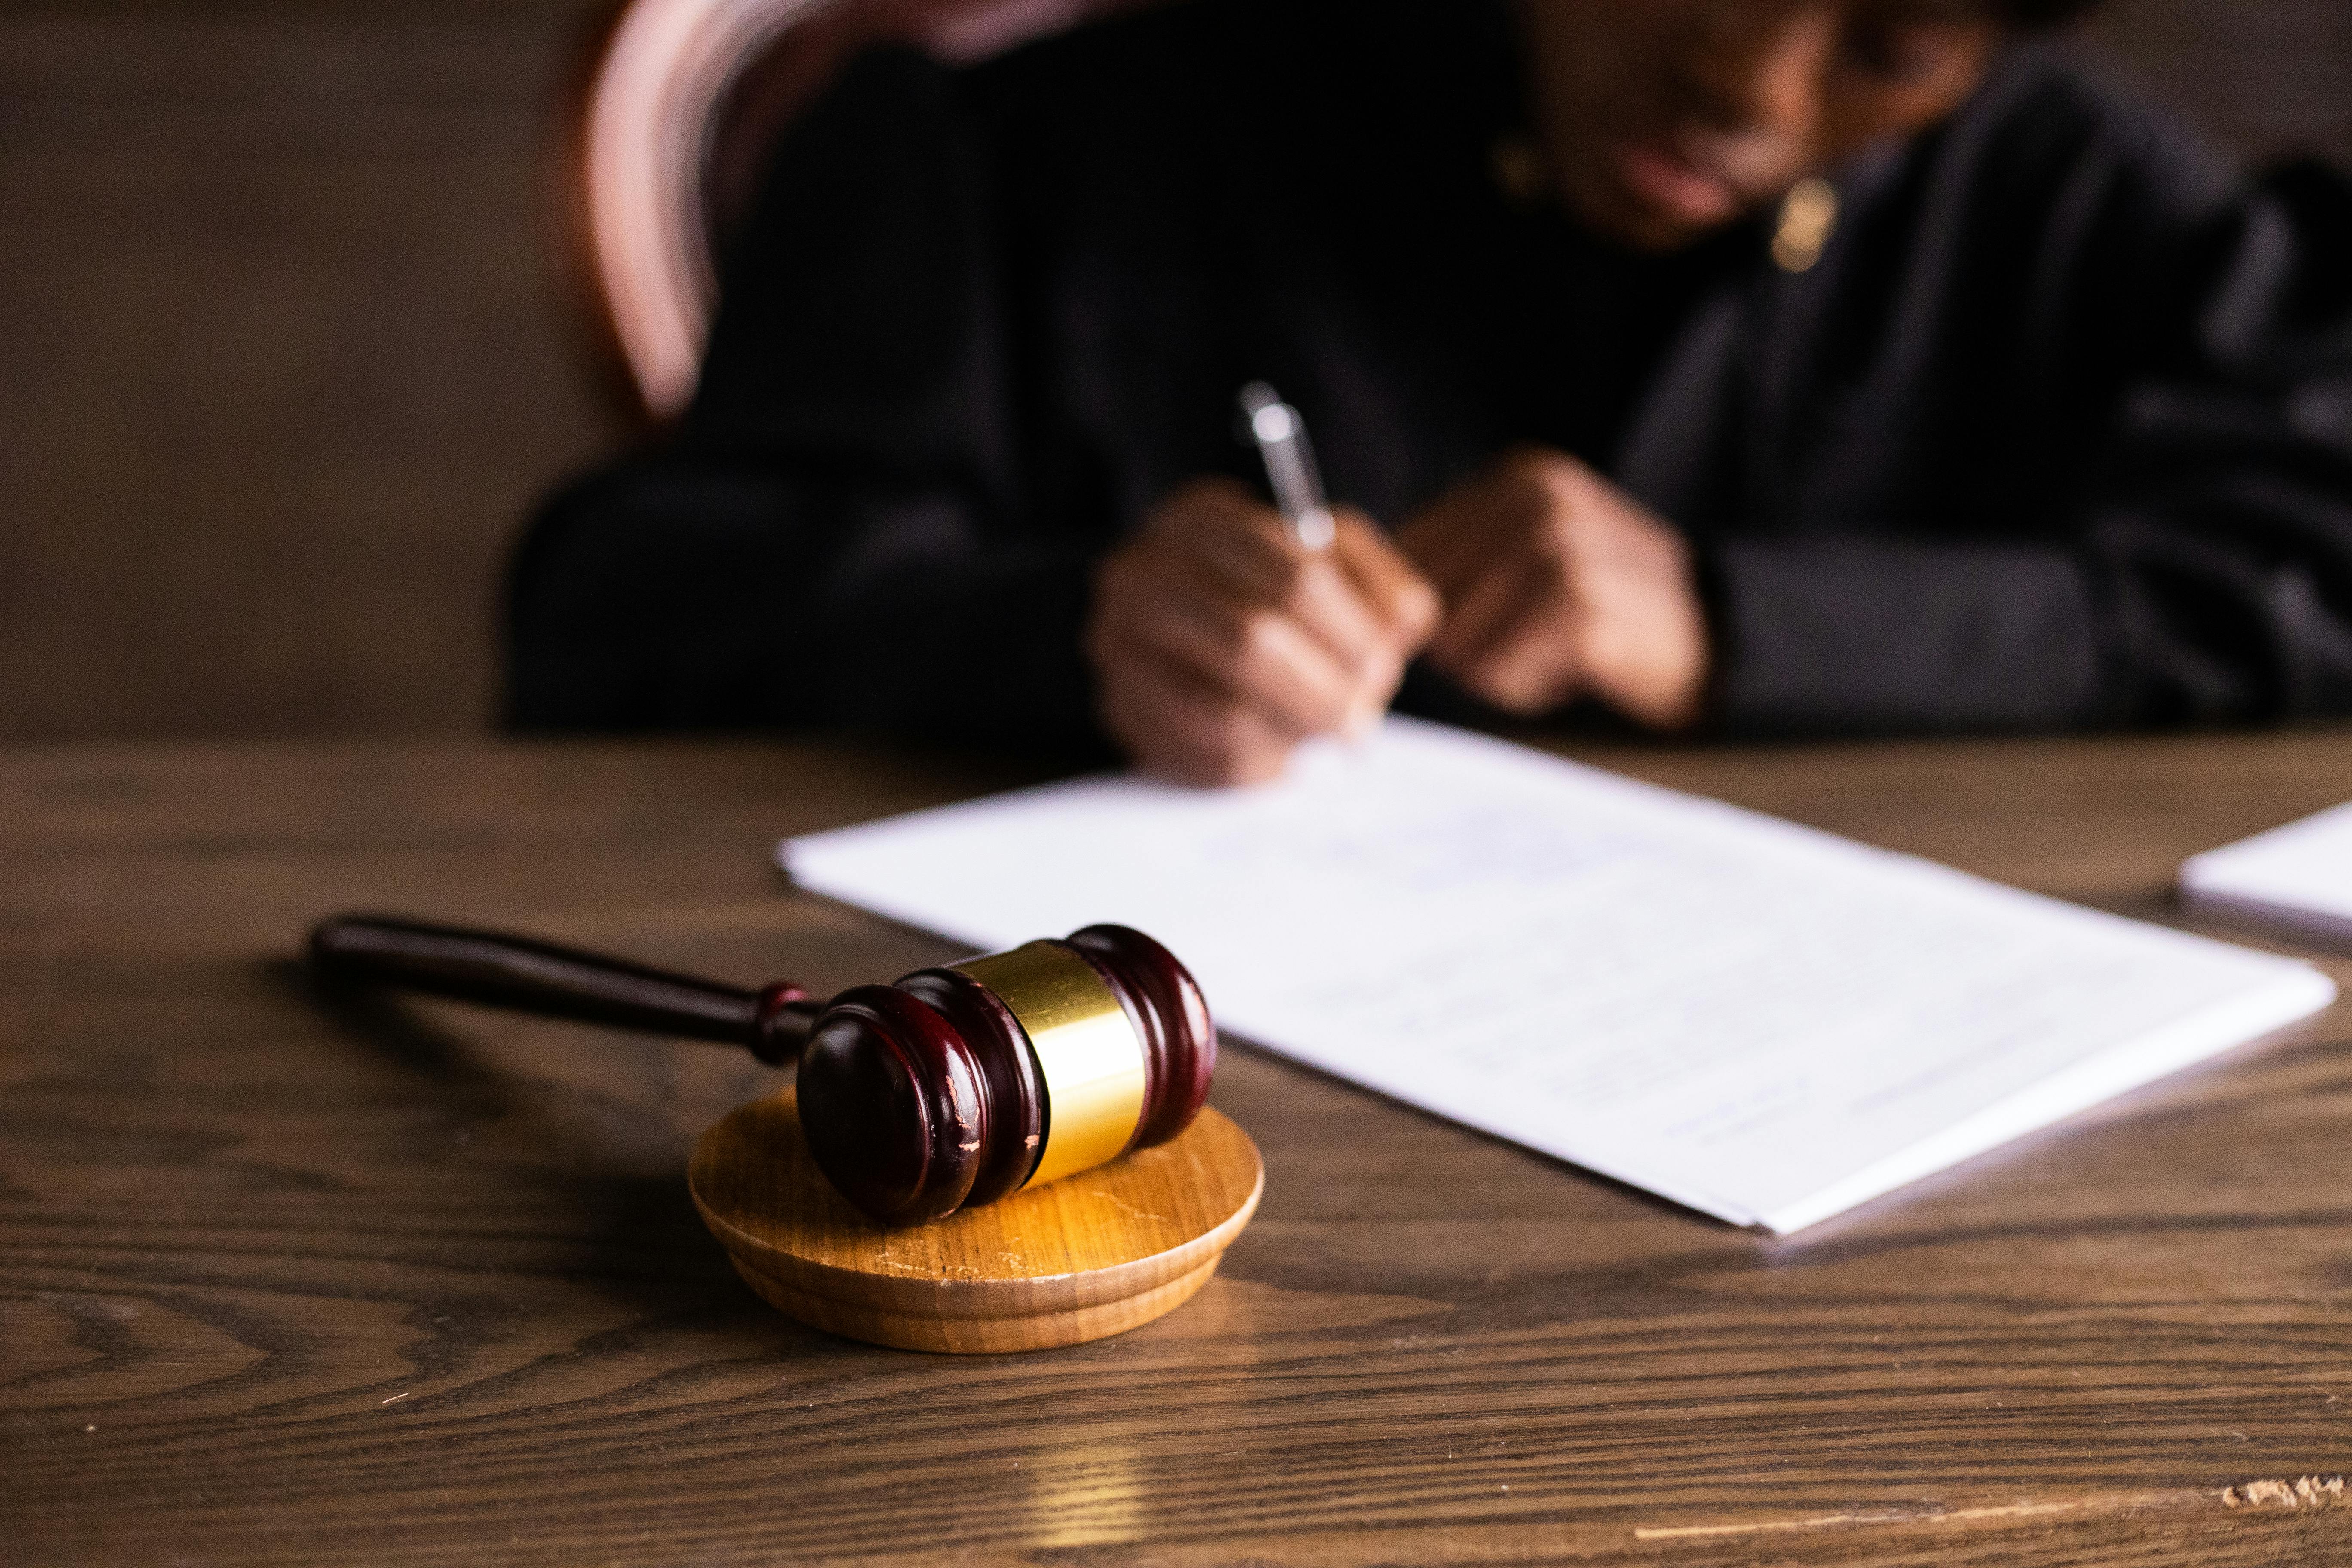 Un juez finaliza el divorcio | Fuente: Midjourney